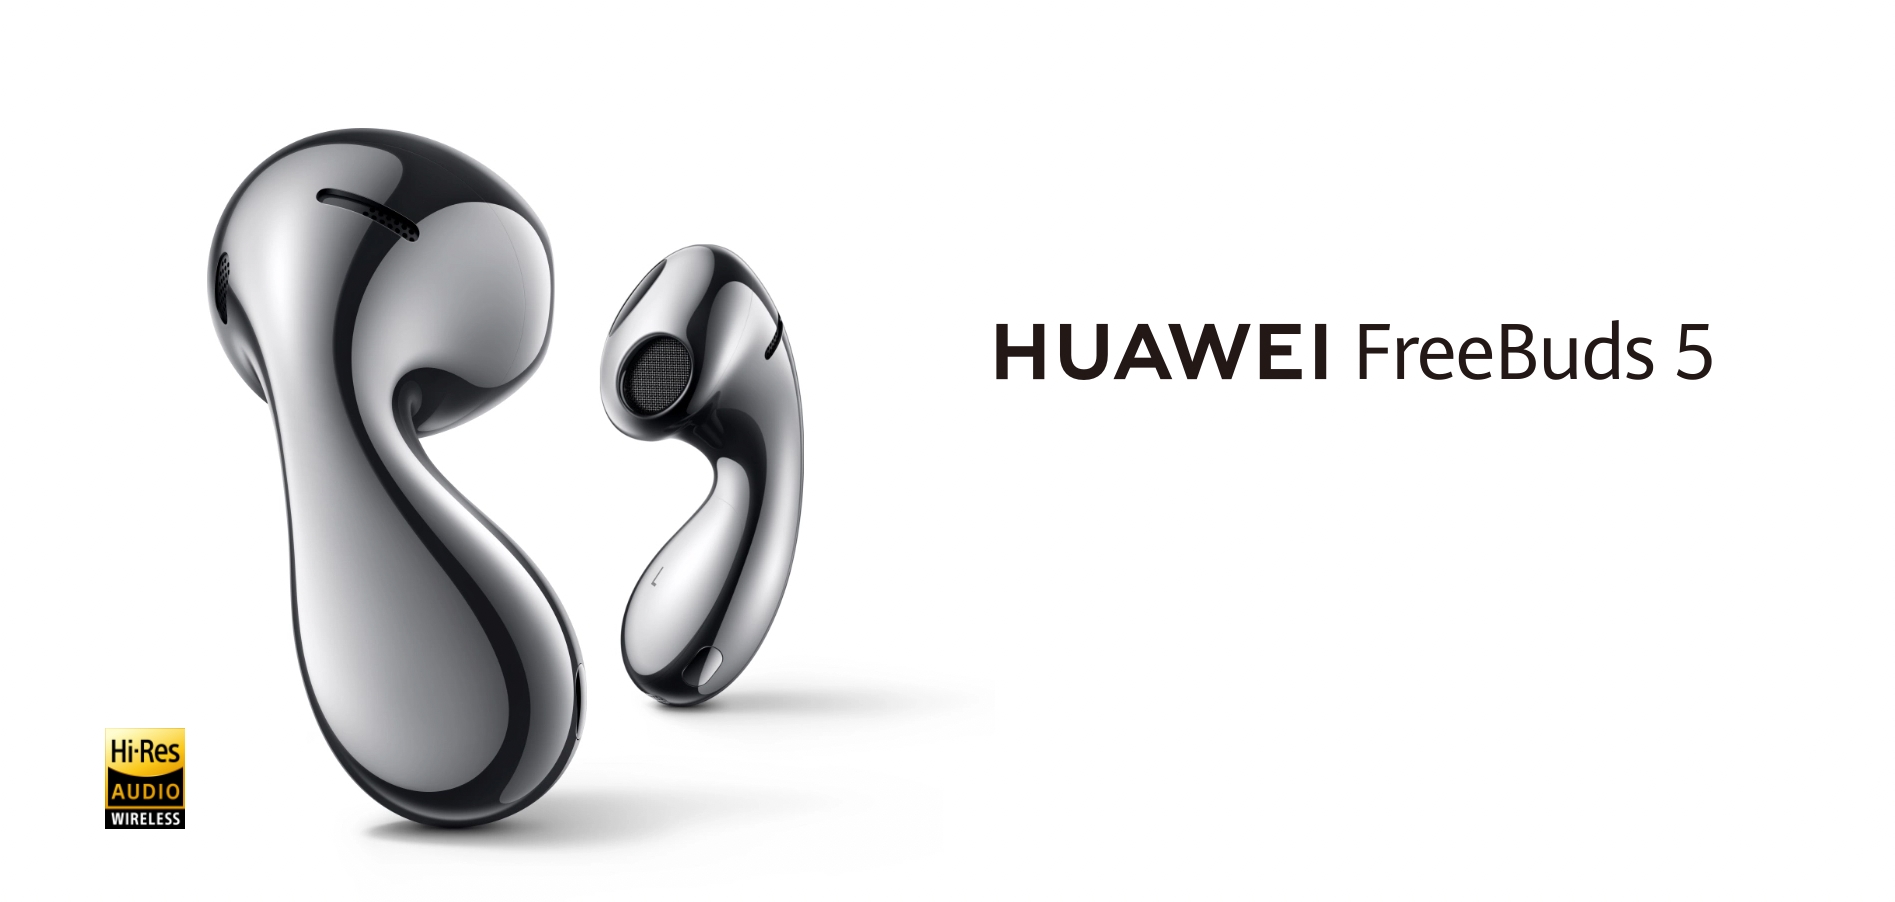 Huawei FreeBuds 5 arriva in Europa: Cuffie TWS con un design insolito e ANC ibrido a 159 euro